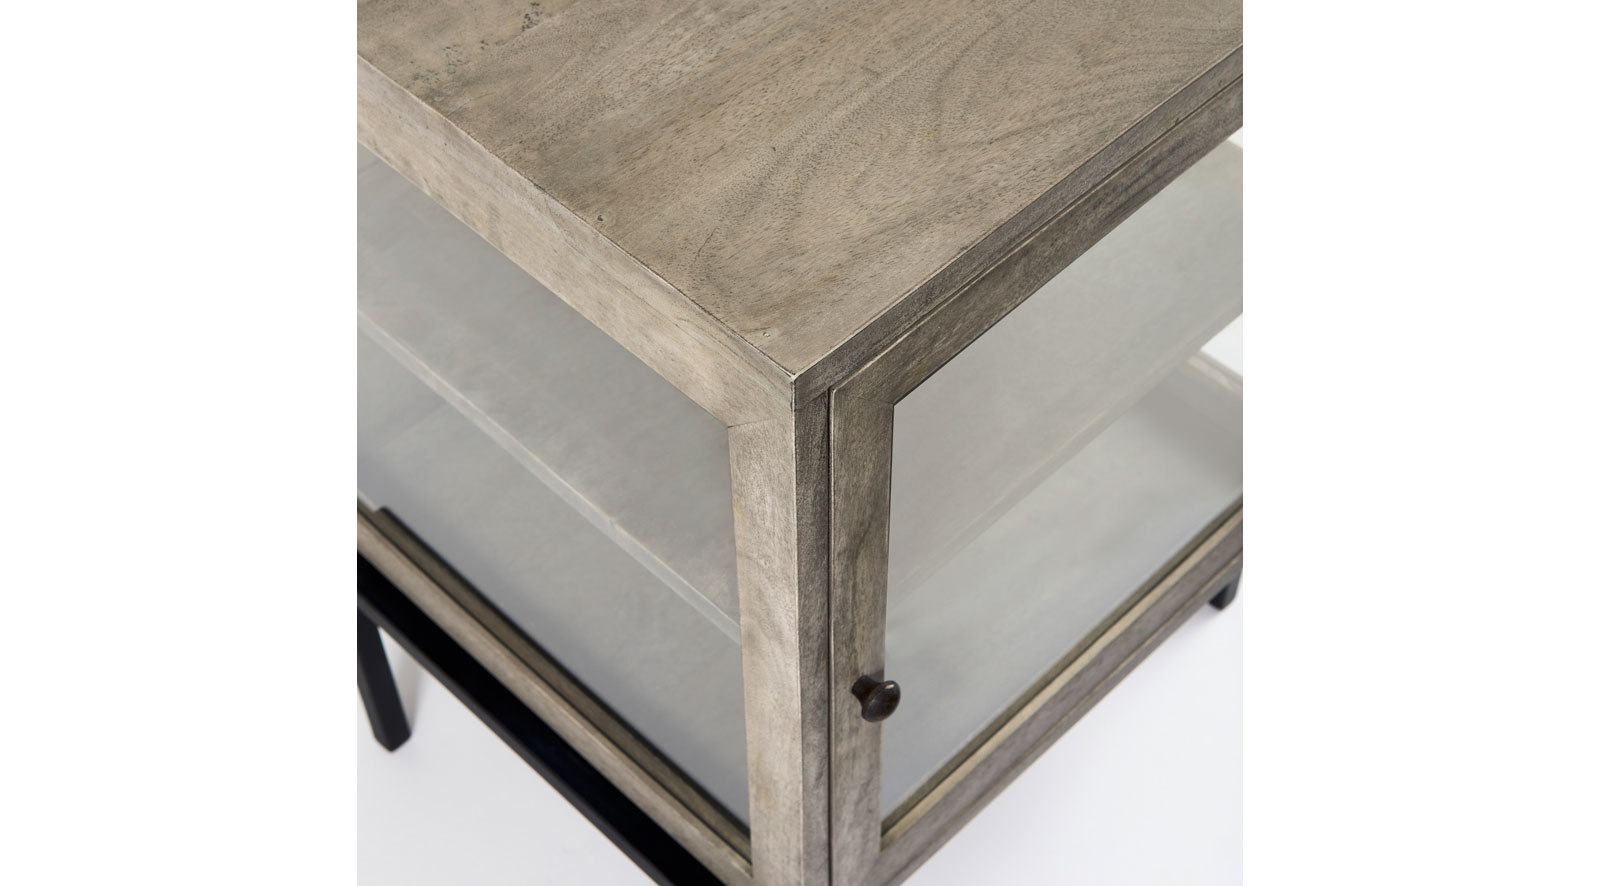 lyon-20lx18wx26h-gray-wood-w-black-metal-frame-end-side-table-6